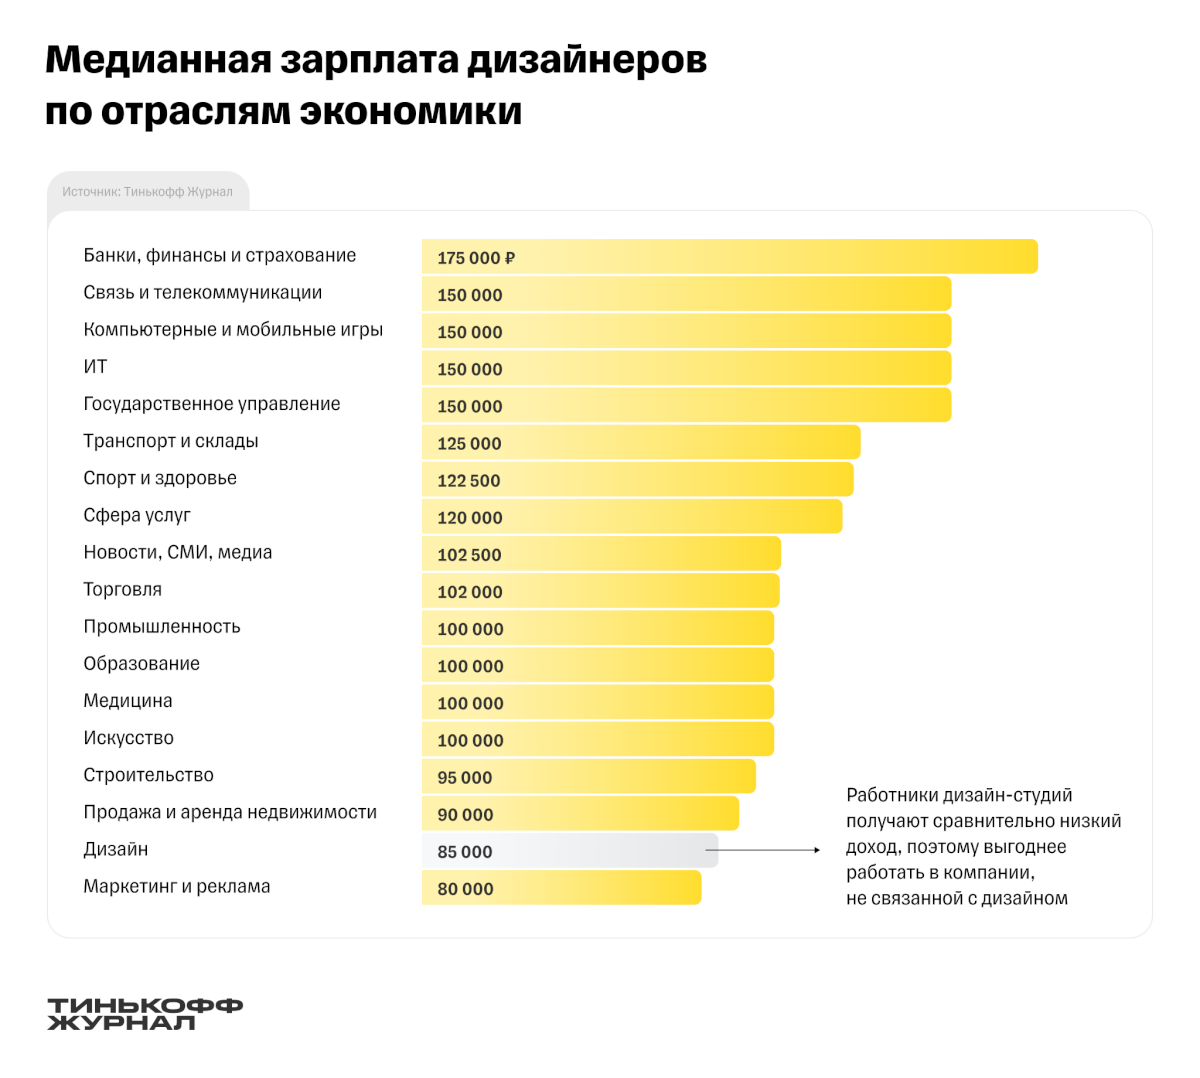 Зарплата дизайнеров в России